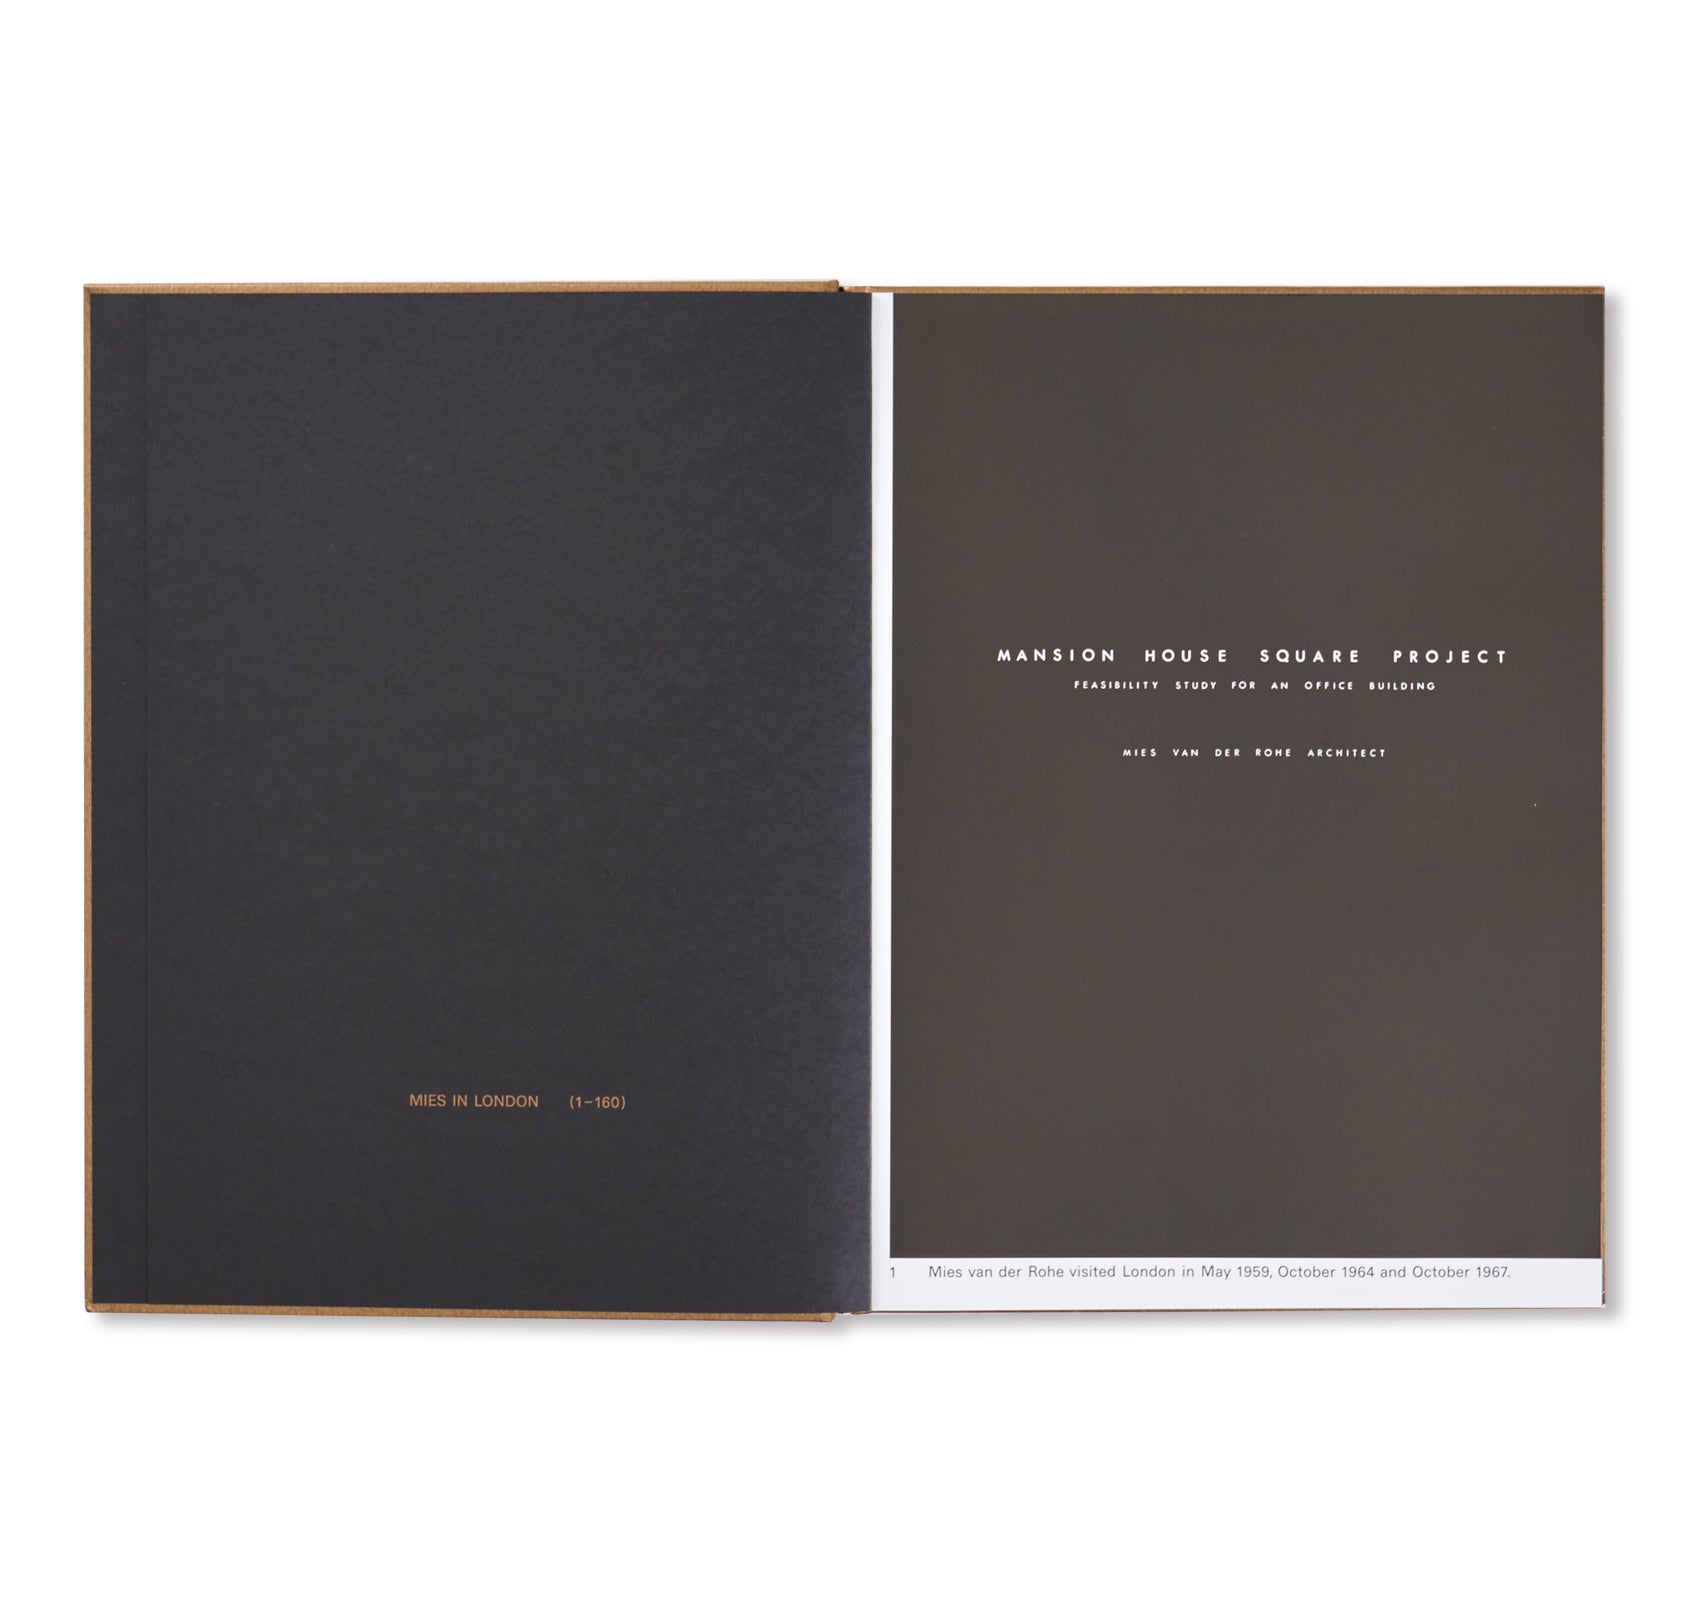 MIES IN LONDON by Mies van der Rohe [HARDCOVER] – twelvebooks